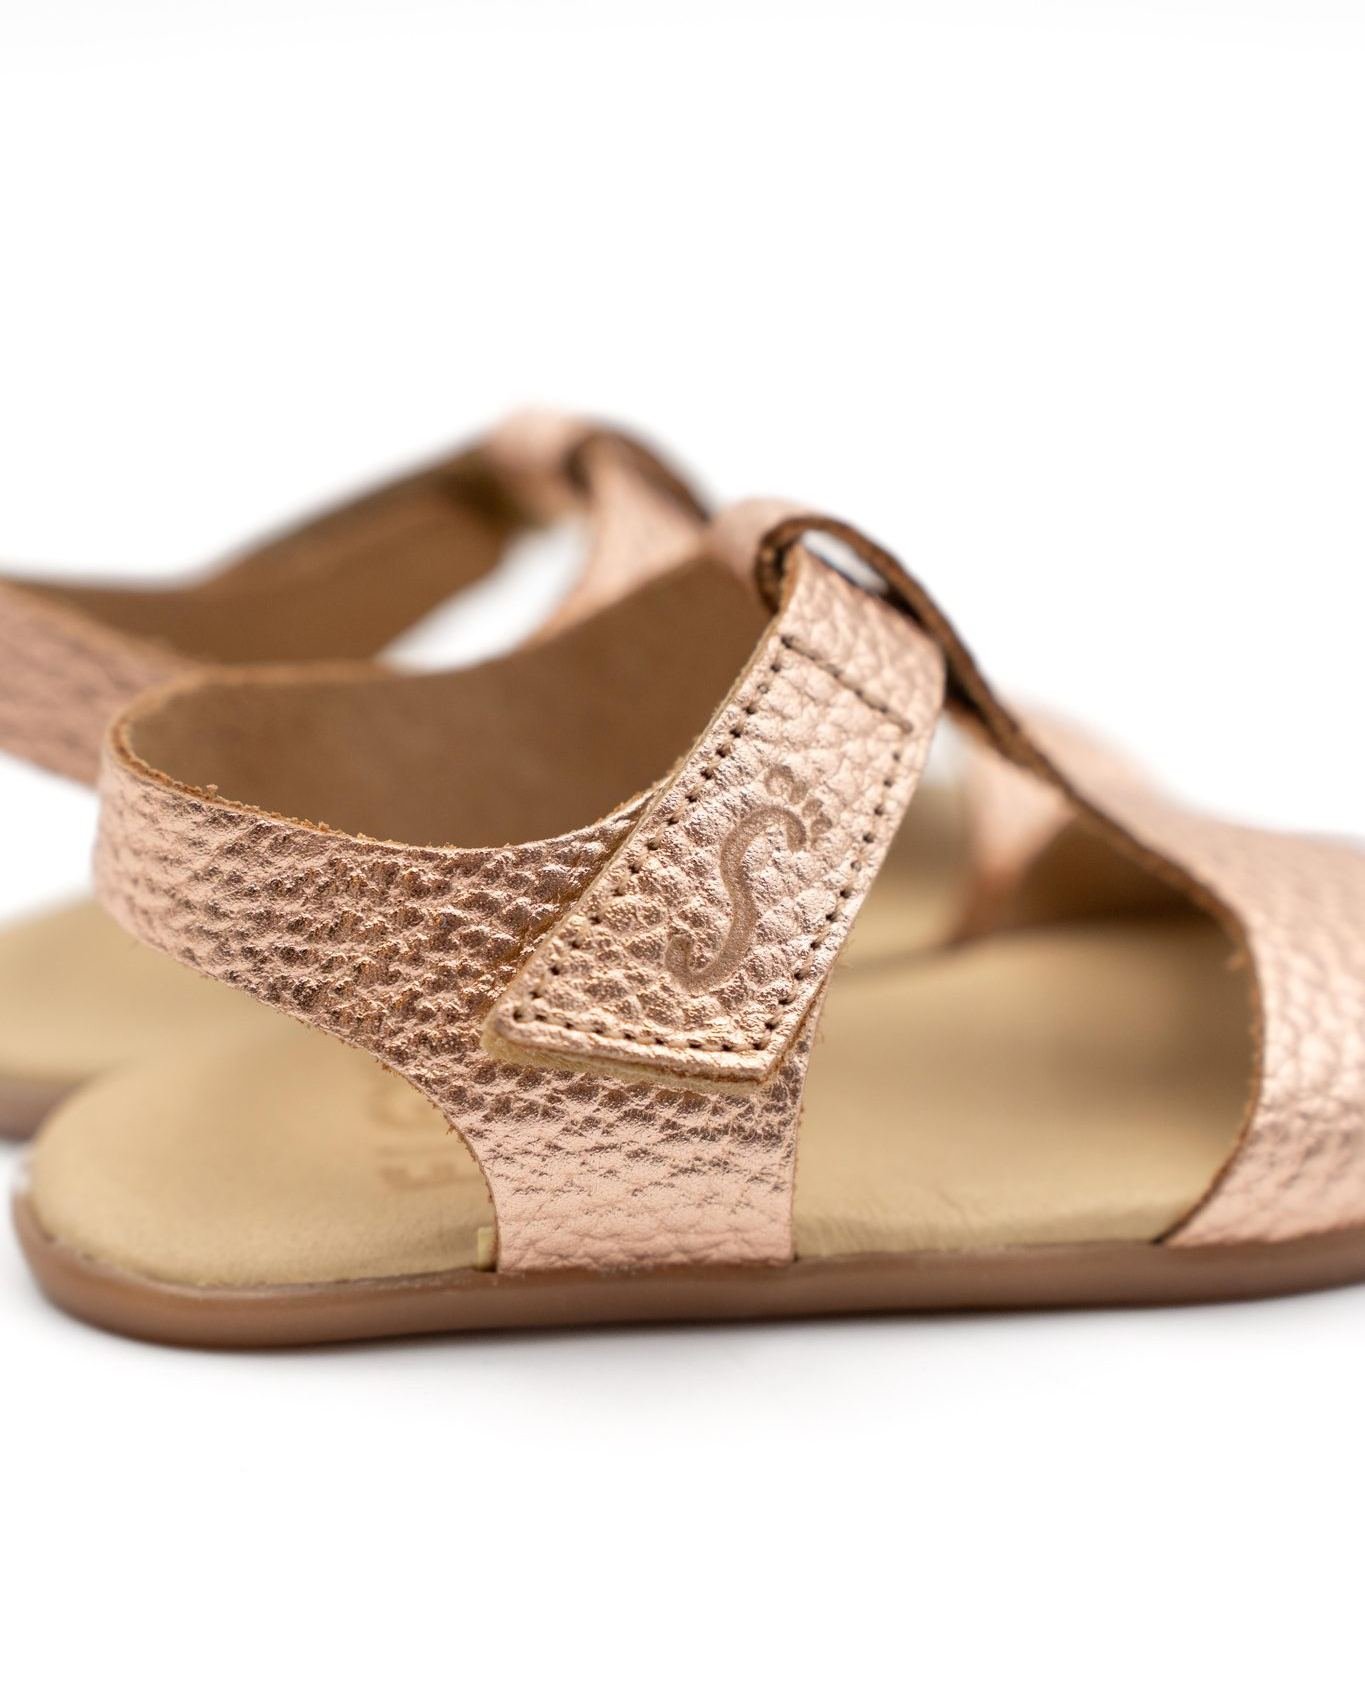 &iexcl;Es tiempo de brillar! ✨ Deja que tu peque se calce estas sandalias metalizadas tan bonitas y que disfrute brillando bajo el sol de la primavera ☀️🌸

🔵 MOD: Tucson Nude
🟢 REF: 190 - H
🟡 Tallas disponibles: 18 - 26
&middot;
&middot;
#nens #f